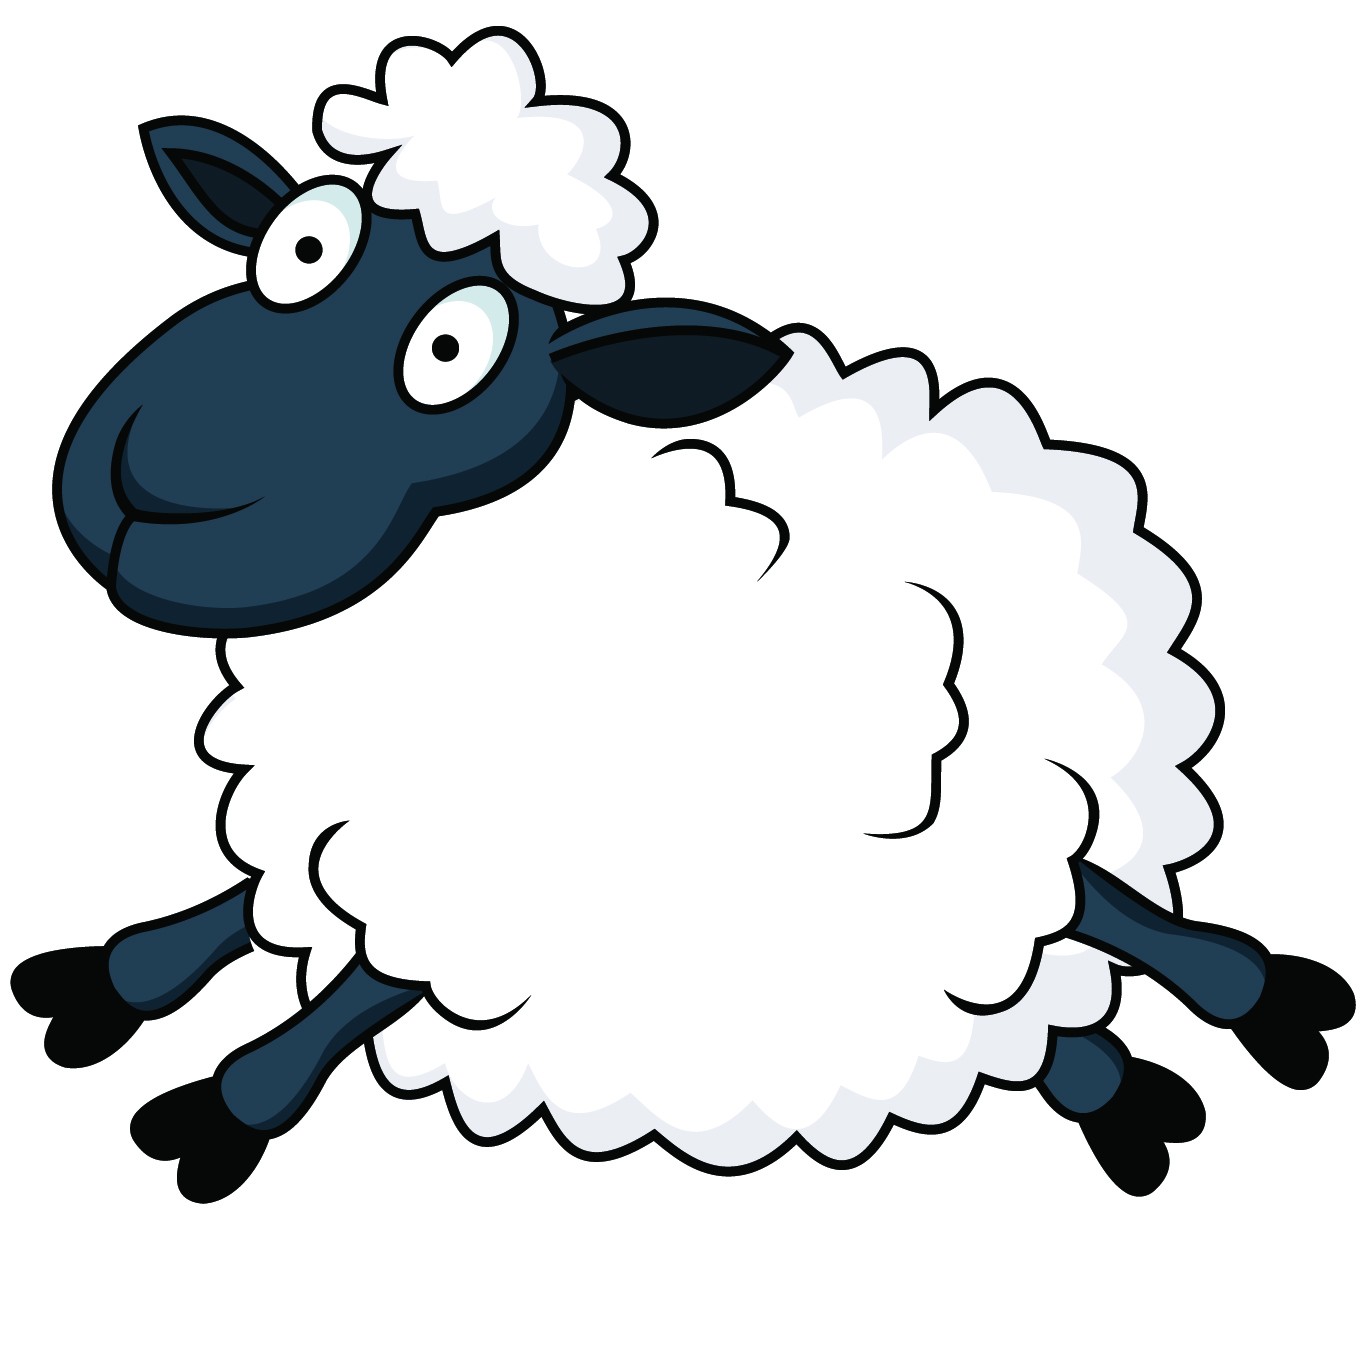 Sheep Cartoon Drawing at GetDrawings | Free download